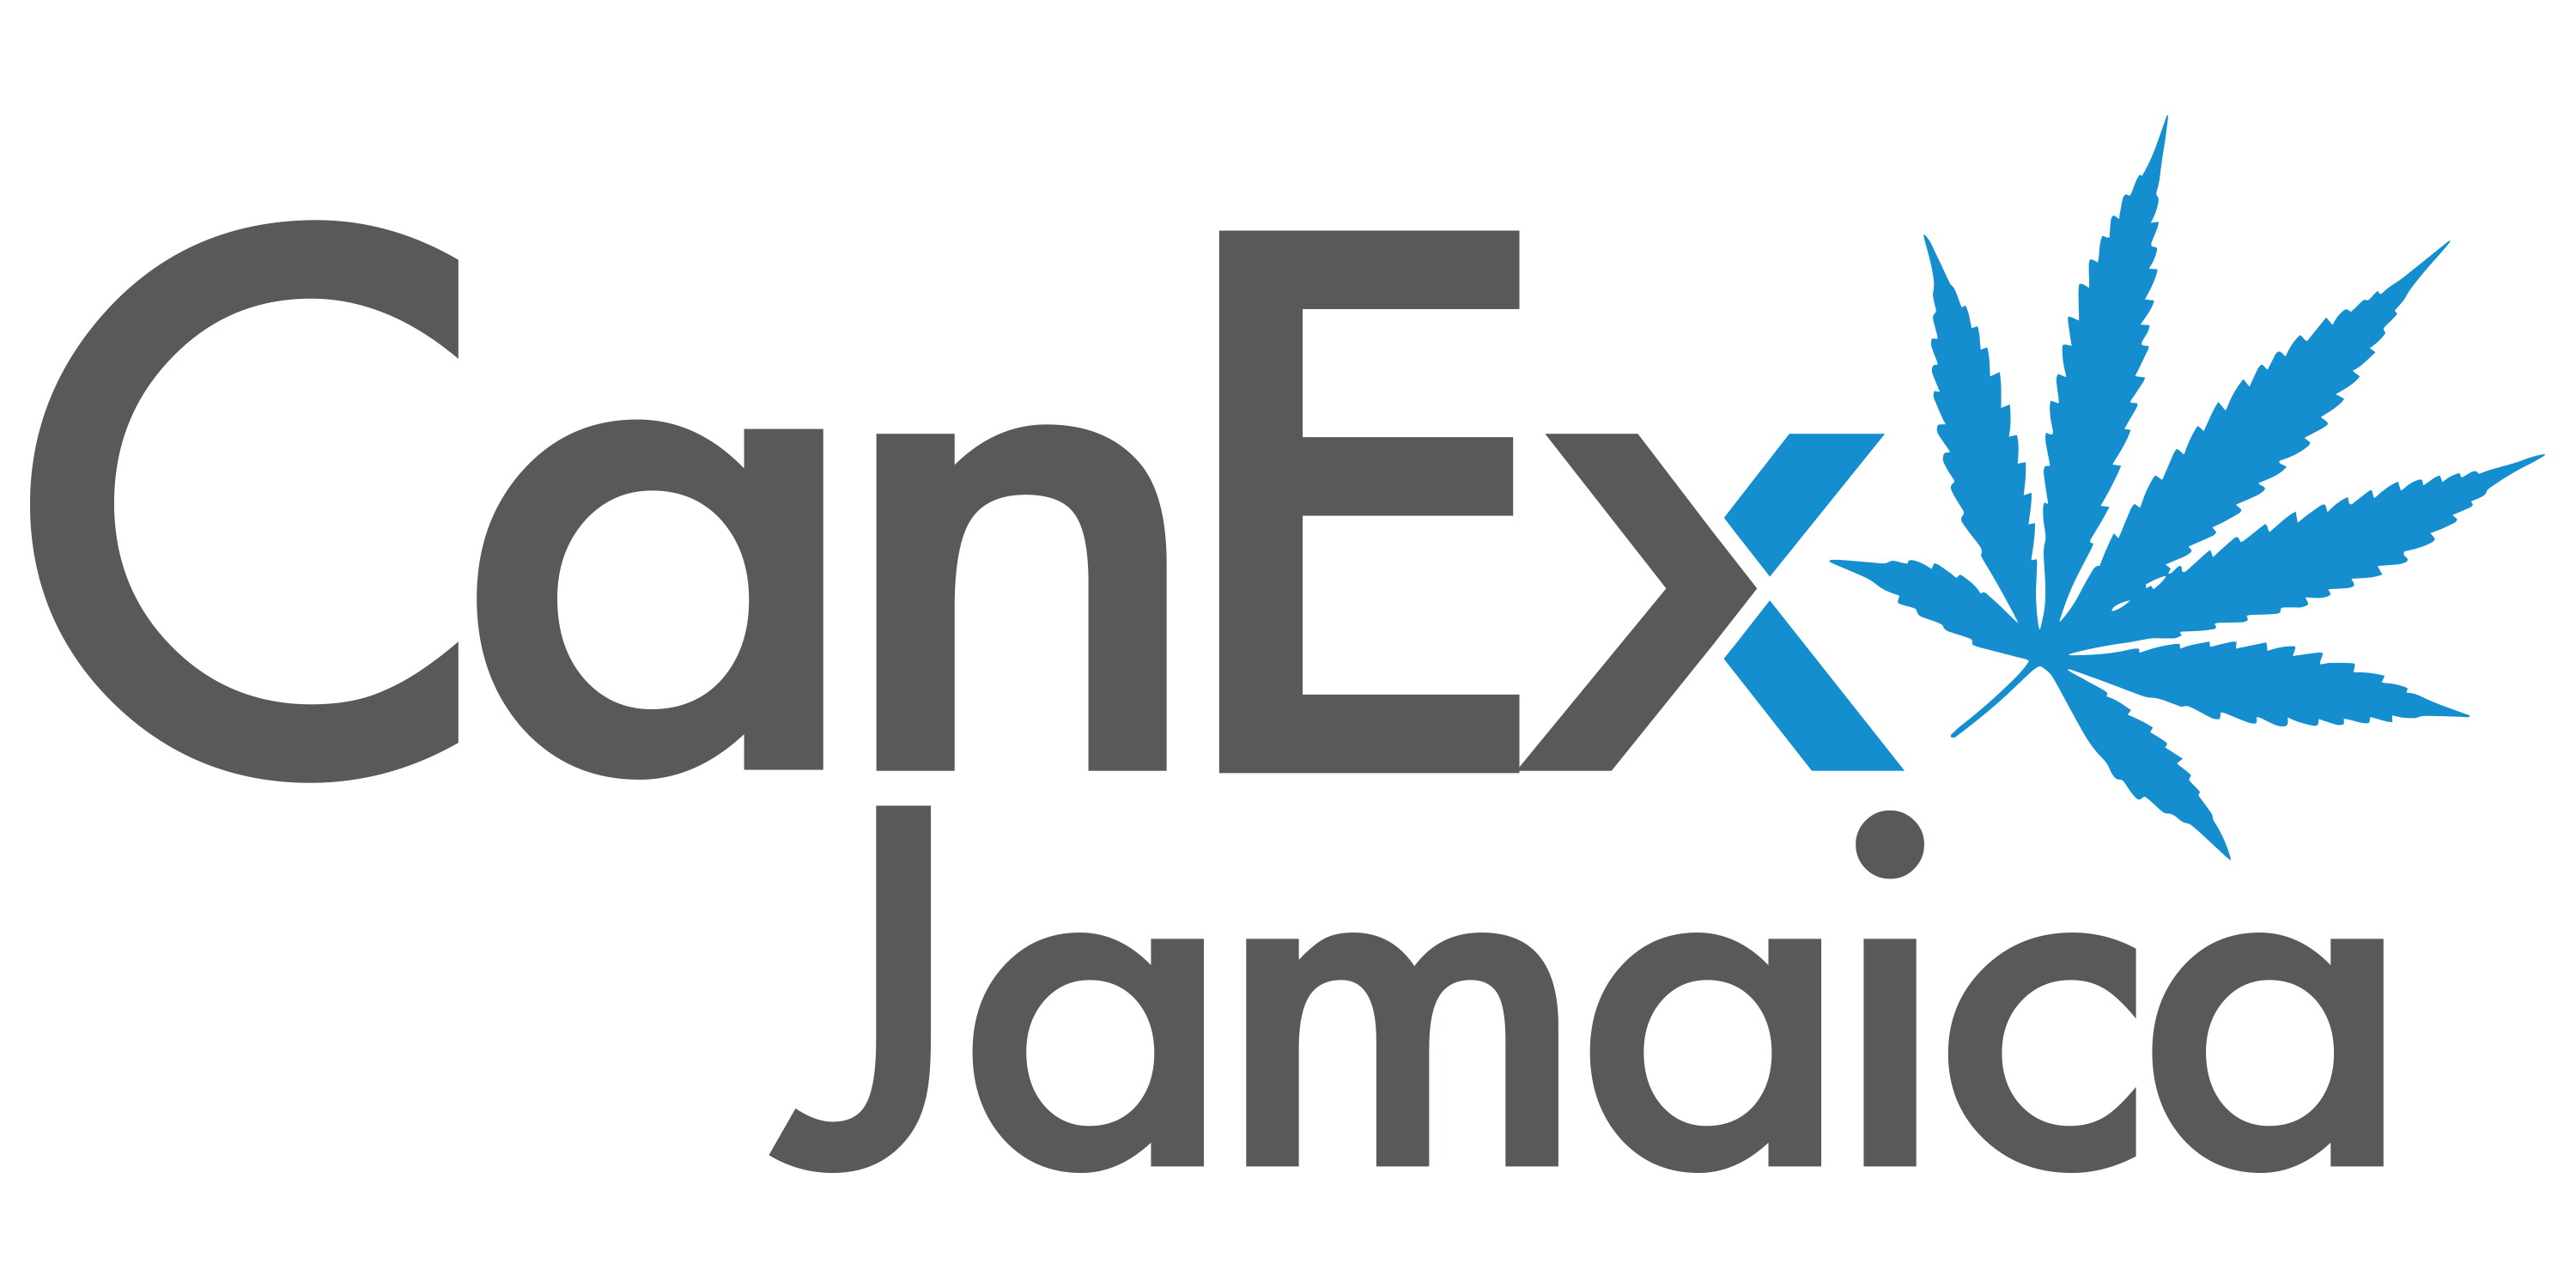 CanEx Jamaica Logo